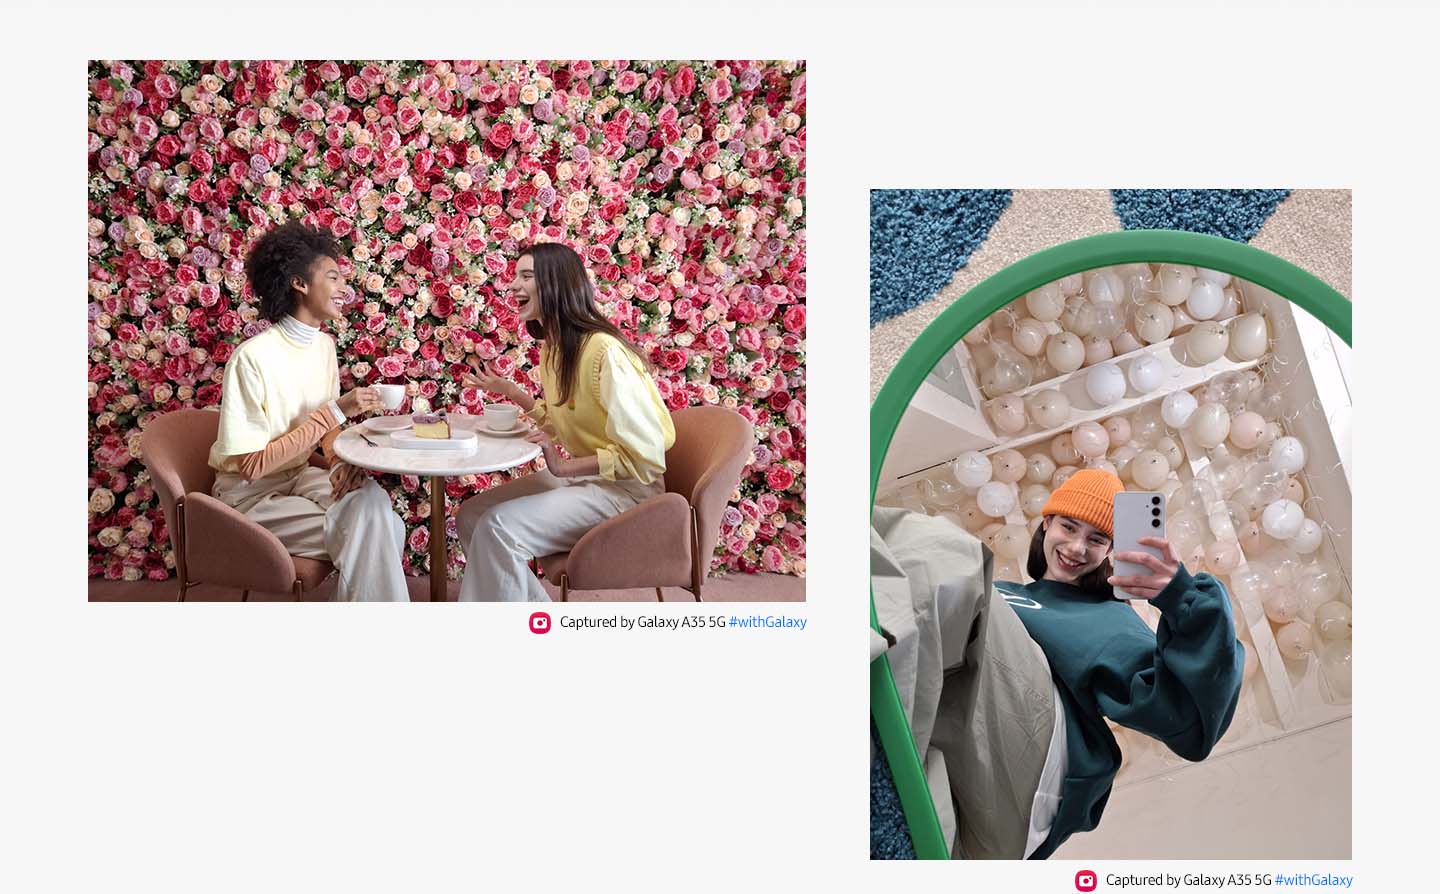 Zu sehen sind wei Personen, die sich an einem Tisch unterhalten, vor einem leuchtend rosafarbenen Blumenhintergrund. Zu sehen ist auch ein Spiegel-Selfie einer Person vor einem Hintergrund aus weien Luftballons. Der Text liest: "Aufgenommen mit dem Galaxy A35 5G #withGalaxy".